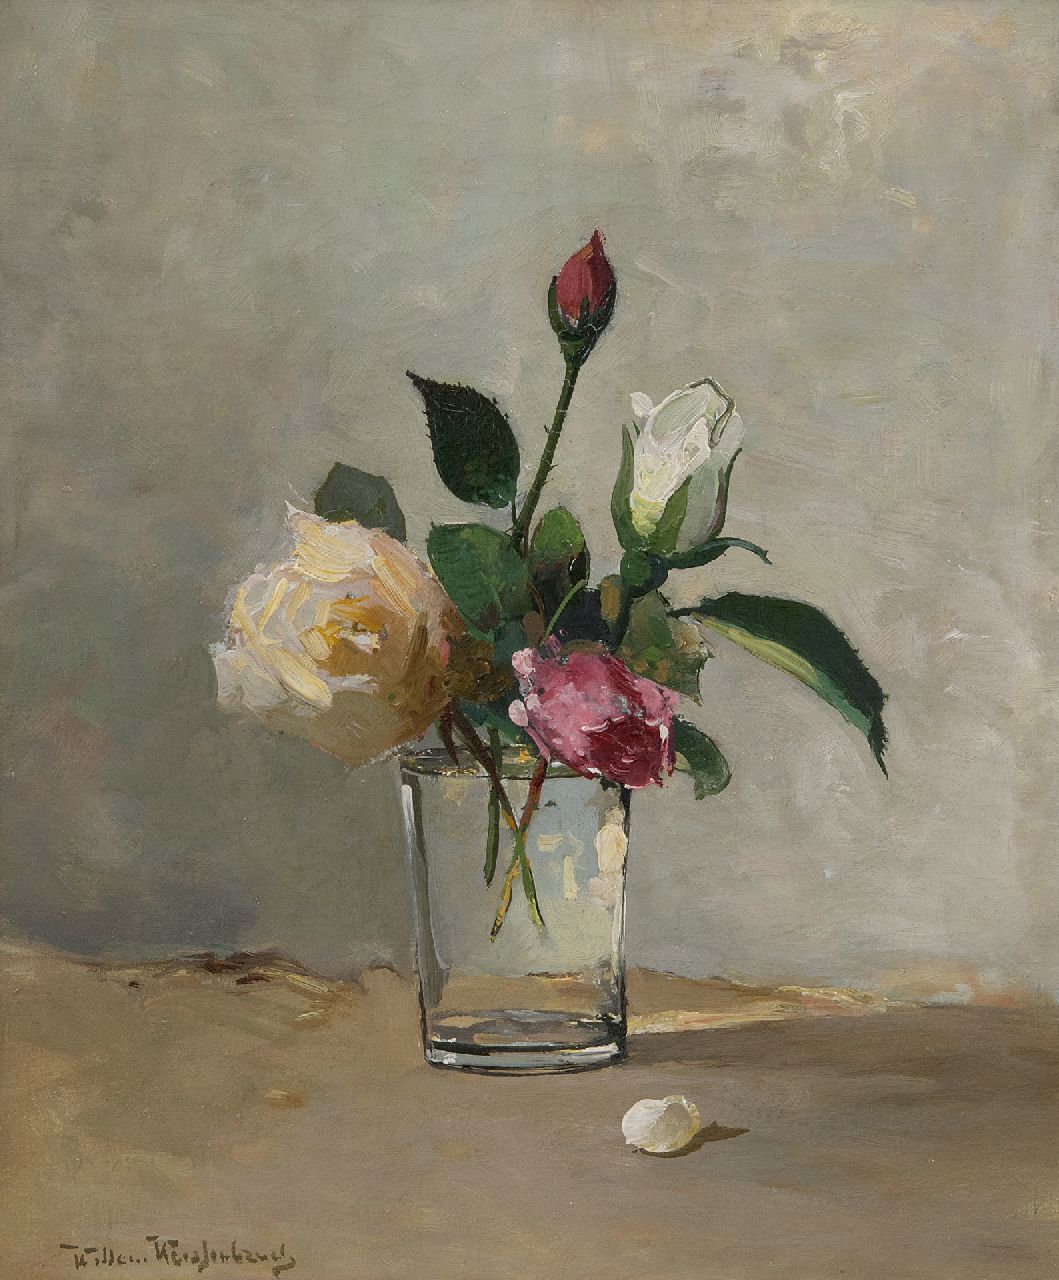 Weissenbruch W.J.  | 'Willem' Johannes Weissenbruch | Schilderijen te koop aangeboden | Stilleven met rozen in een glas, olieverf op doek 31,9 x 27,0 cm, gesigneerd linksonder